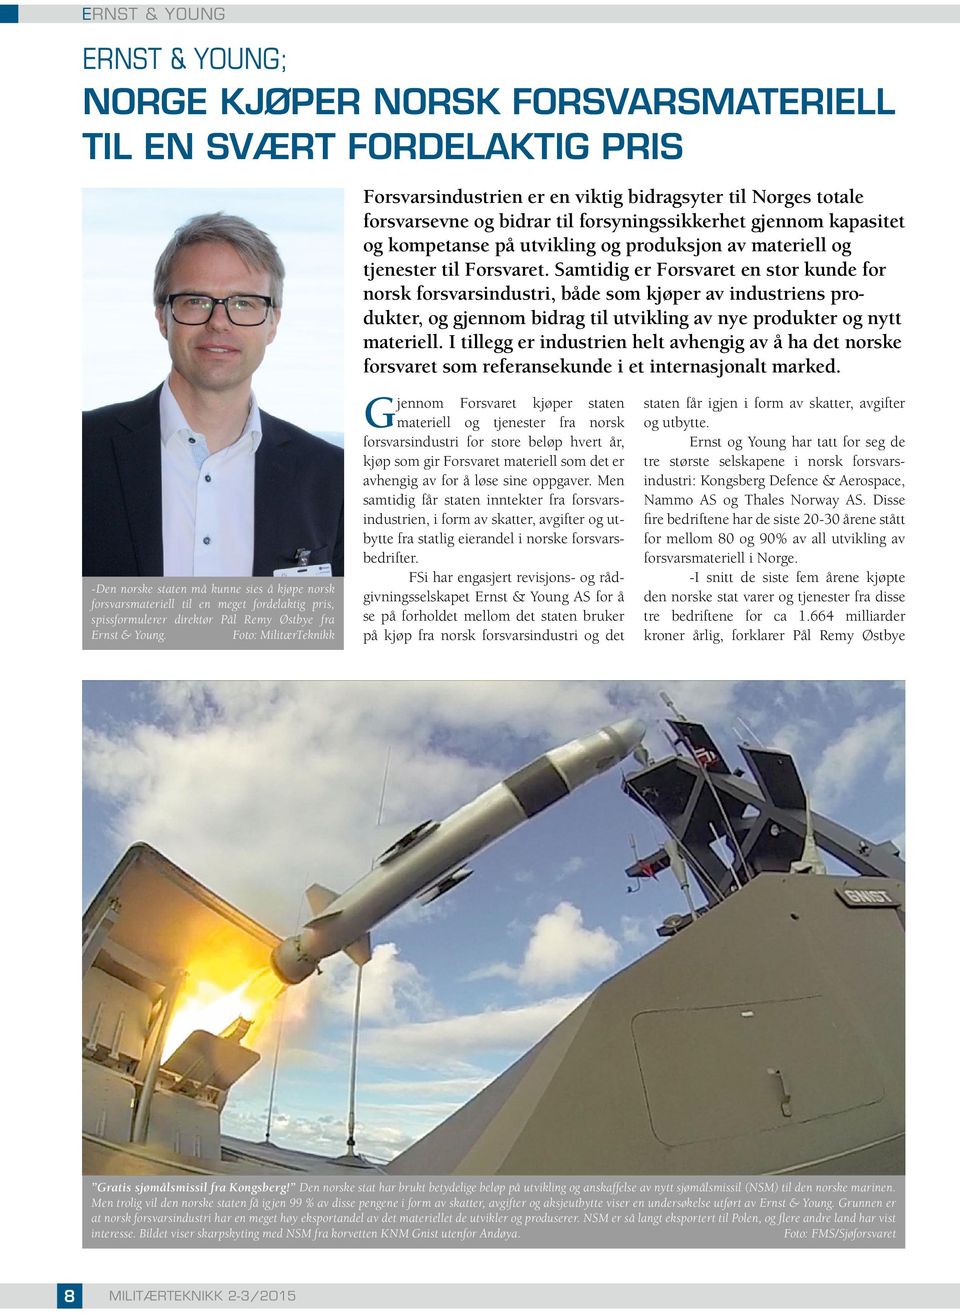 Foto: MilitærTeknikk Forsvarsindustrien er en viktig bidragsyter til Norges totale forsvarsevne og bidrar til forsyningssikkerhet gjennom kapasitet og kompetanse på utvikling og produksjon av